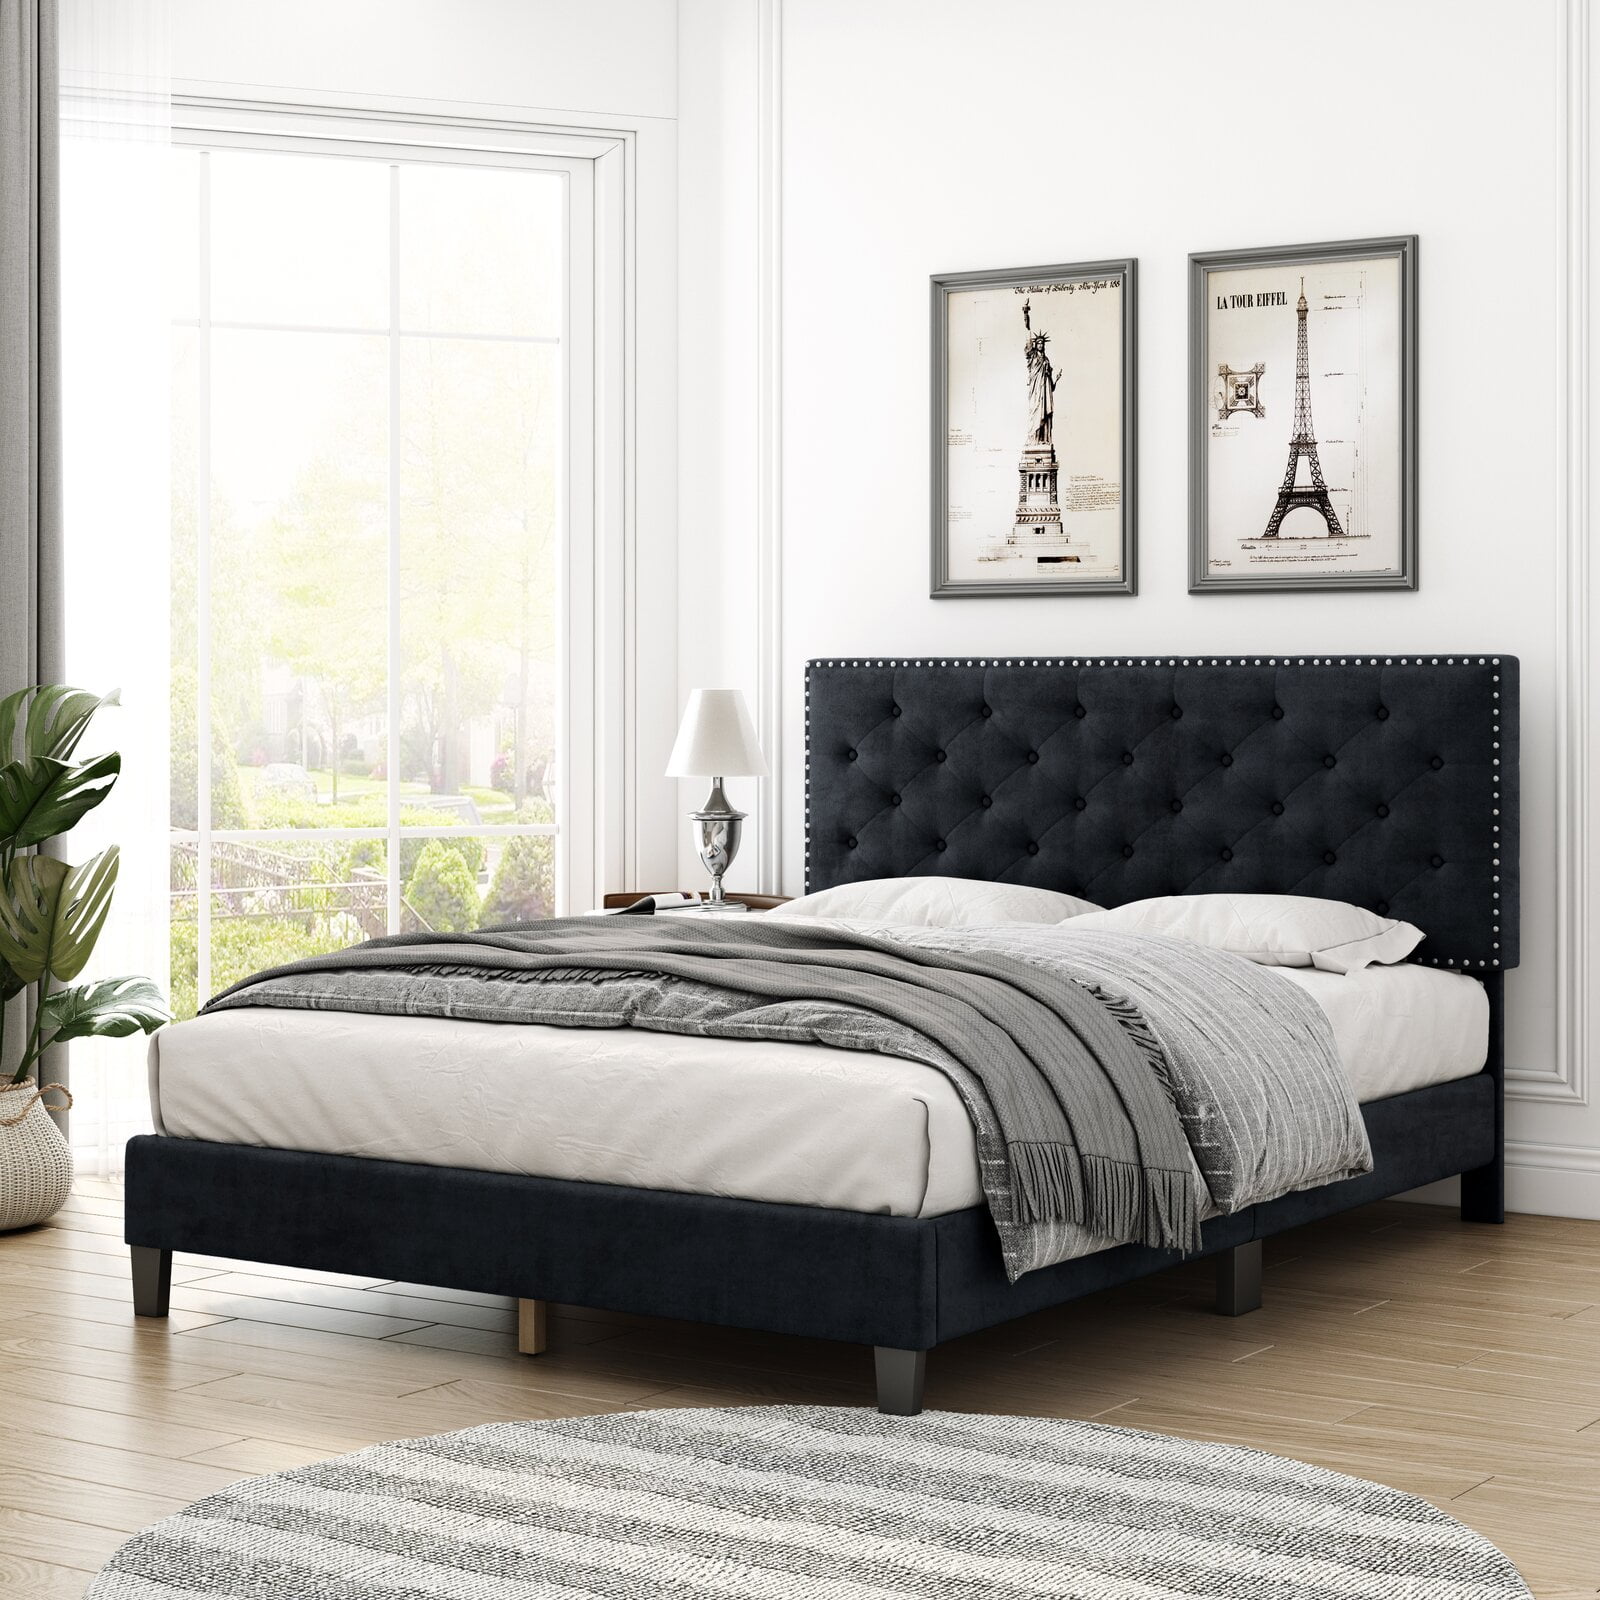 Homfa Queen Size Bed, Modern Upholstered Platform Bed Frame With Adjustable  Headboard For Bedroom, Black - Walmart.Com